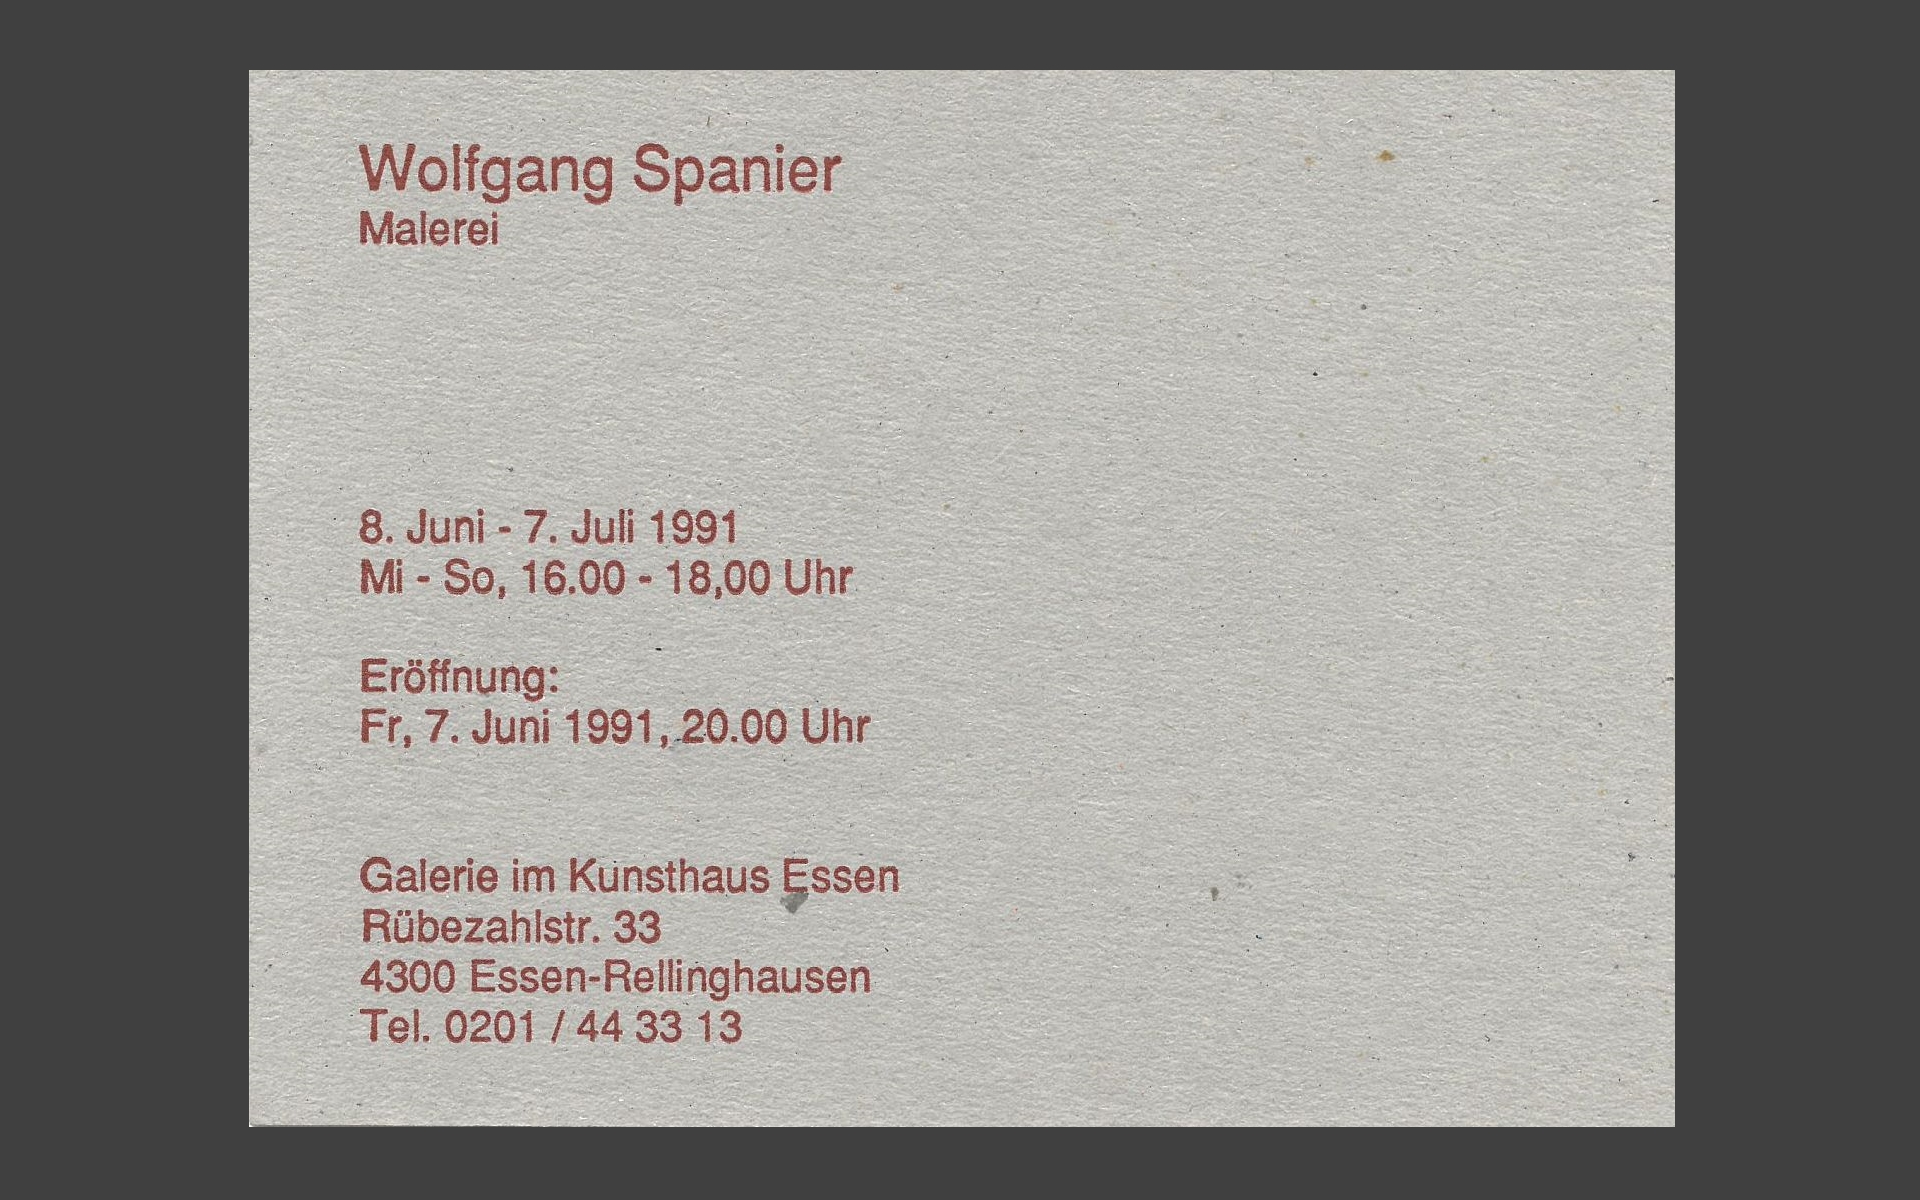 Wolfgang Spanier